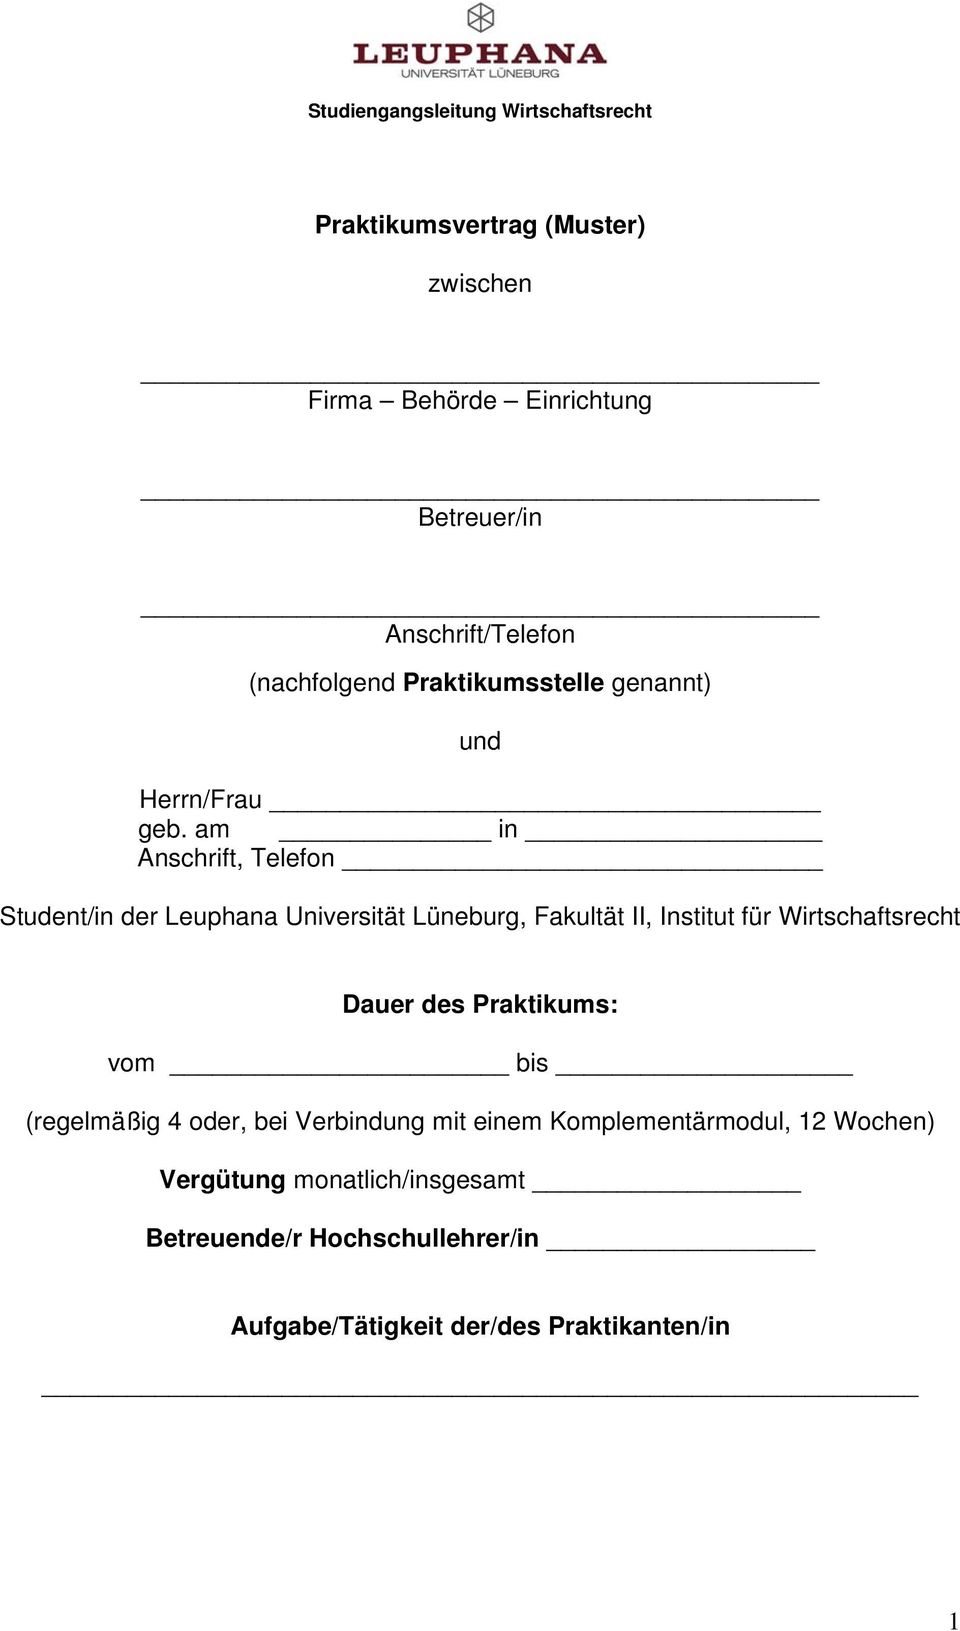 am in Anschrift, Telefon Student/in der Leuphana Universität Lüneburg, Fakultät II, Institut für Wirtschaftsrecht Dauer des